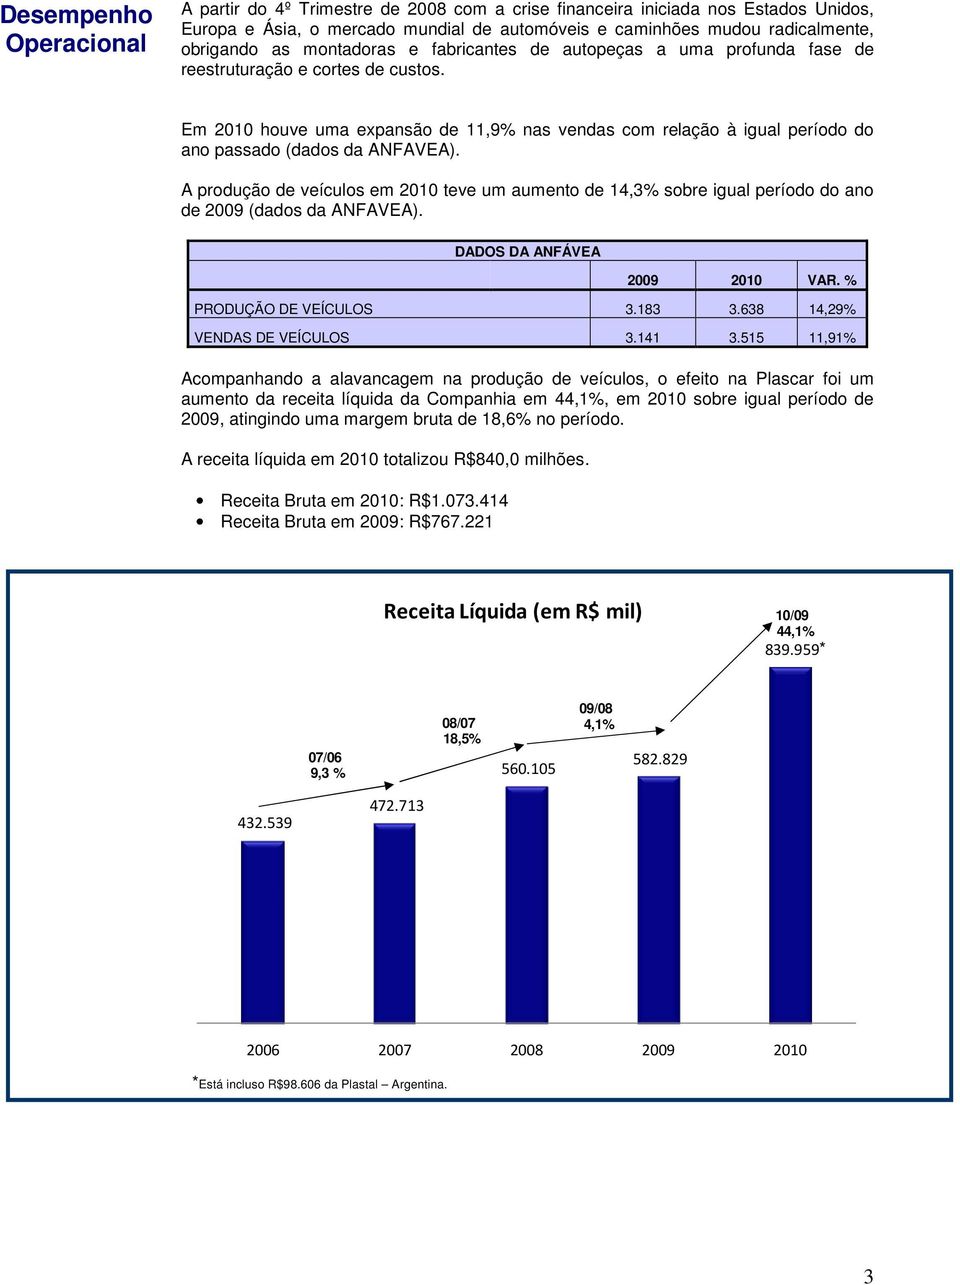 Em 2010 houve uma expansão de 11,9% nas vendas com relação à igual período do ano passado (dados da ANFAVEA).